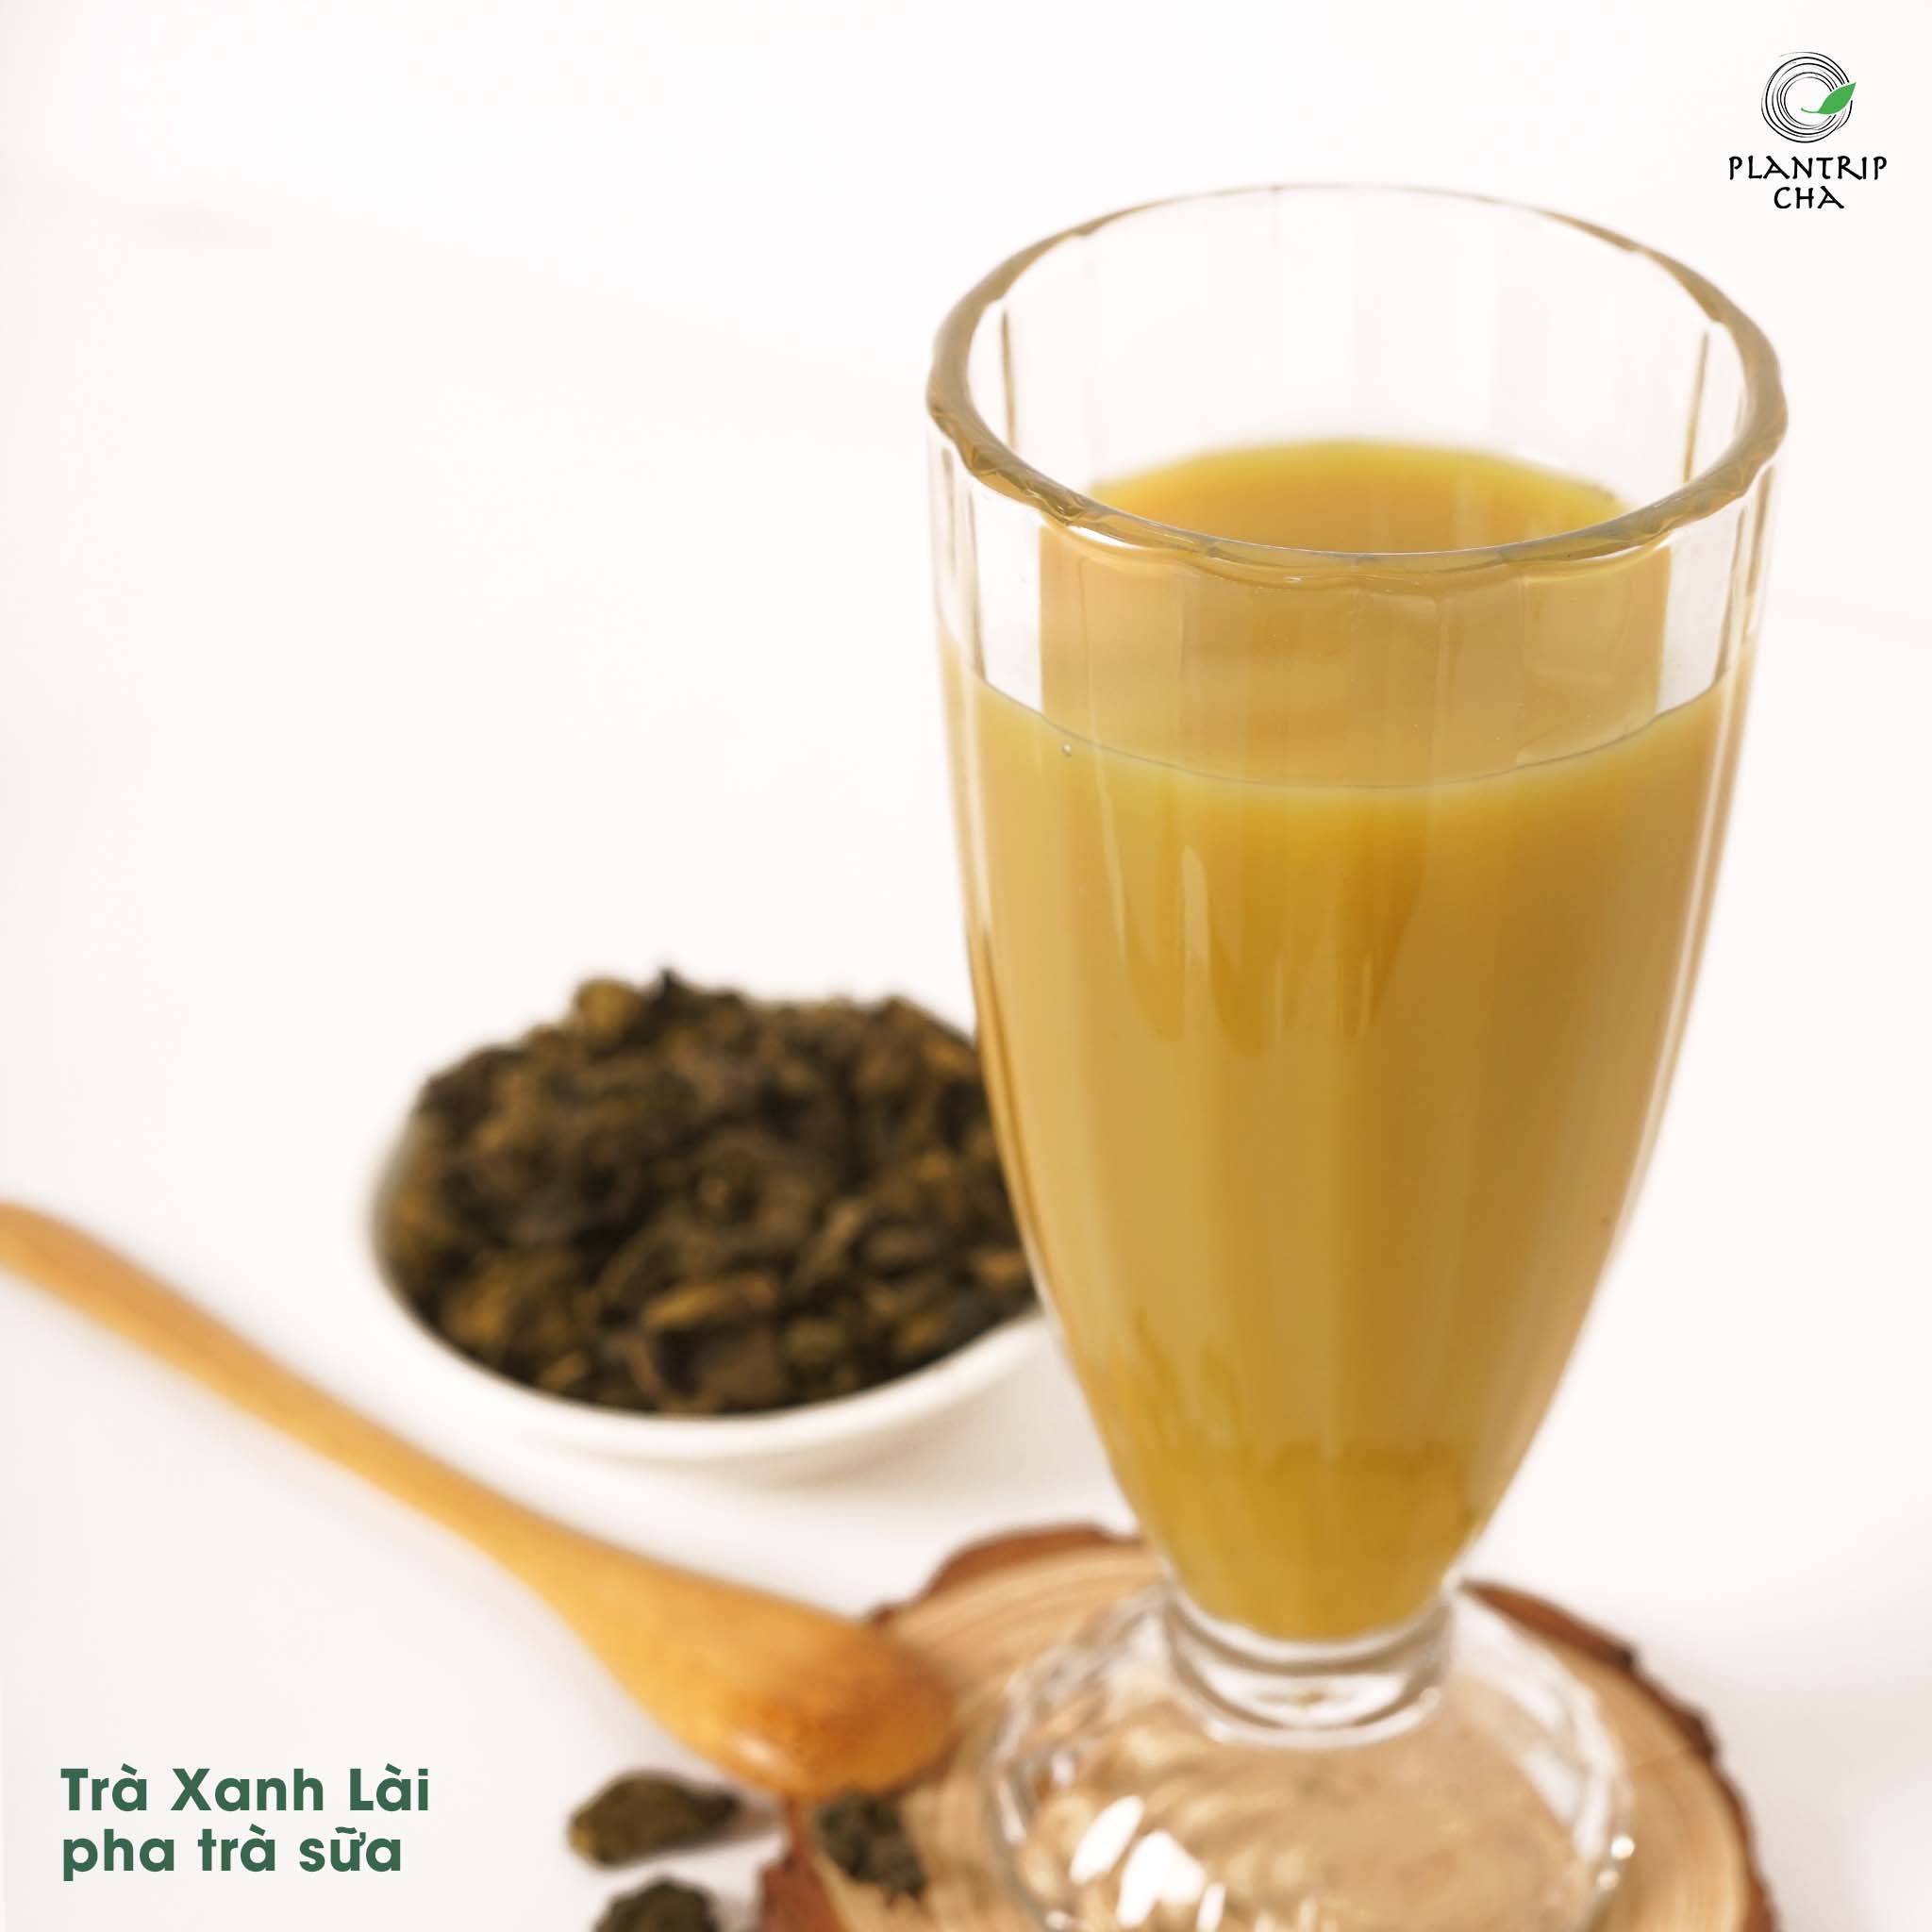 Trà sữa pha từ Trà Xanh Lài thơm ngon muốn uống hoài.